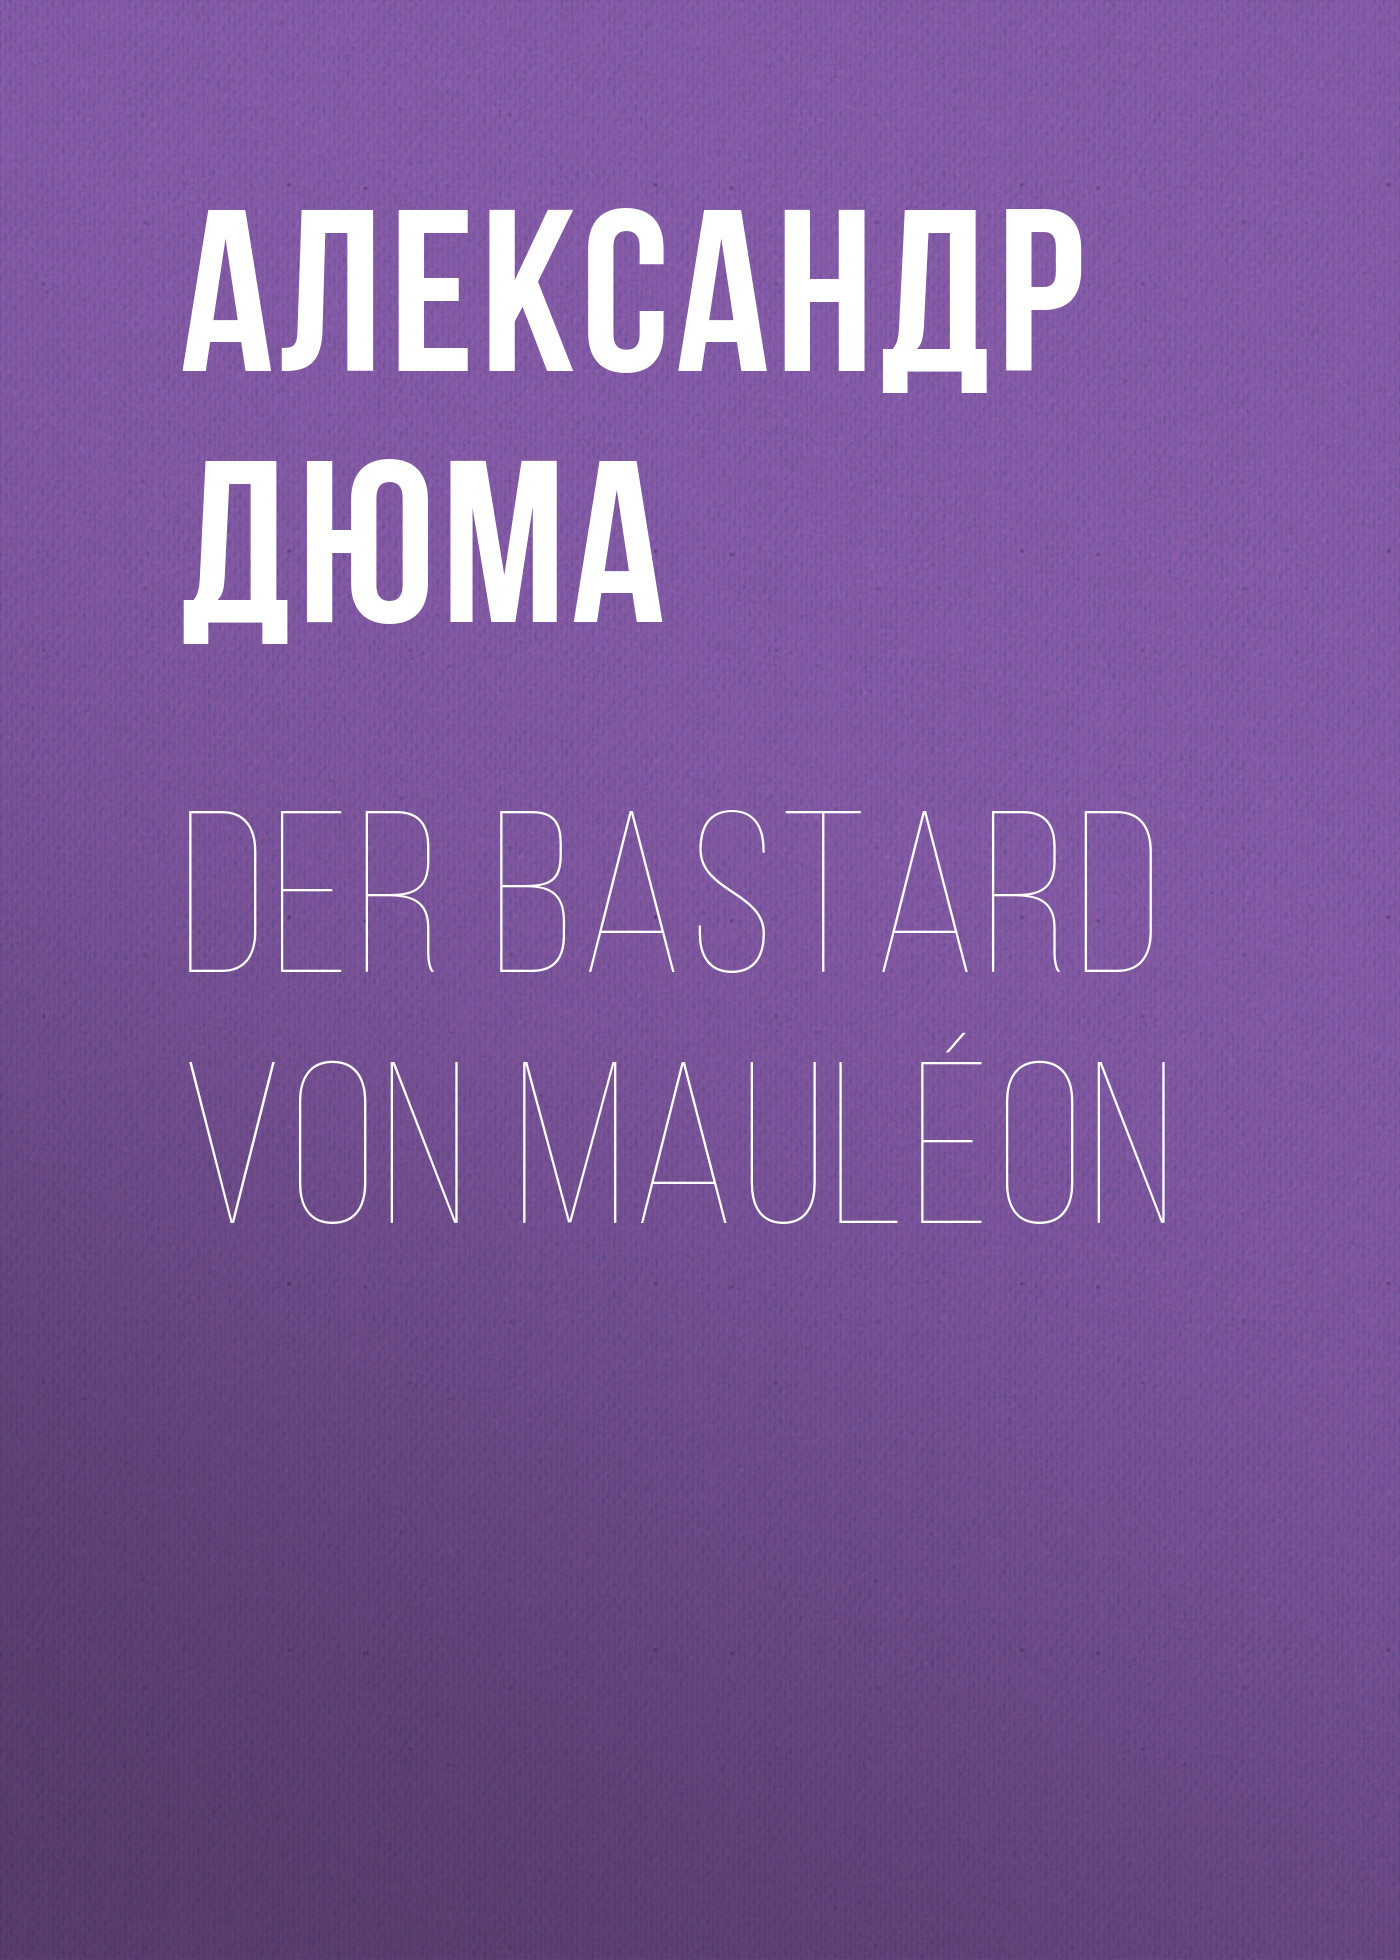 Книга Der Bastard von Mauléon из серии , созданная Alexandre Dumas der Ältere, может относится к жанру Зарубежная классика. Стоимость электронной книги Der Bastard von Mauléon с идентификатором 48632420 составляет 0 руб.